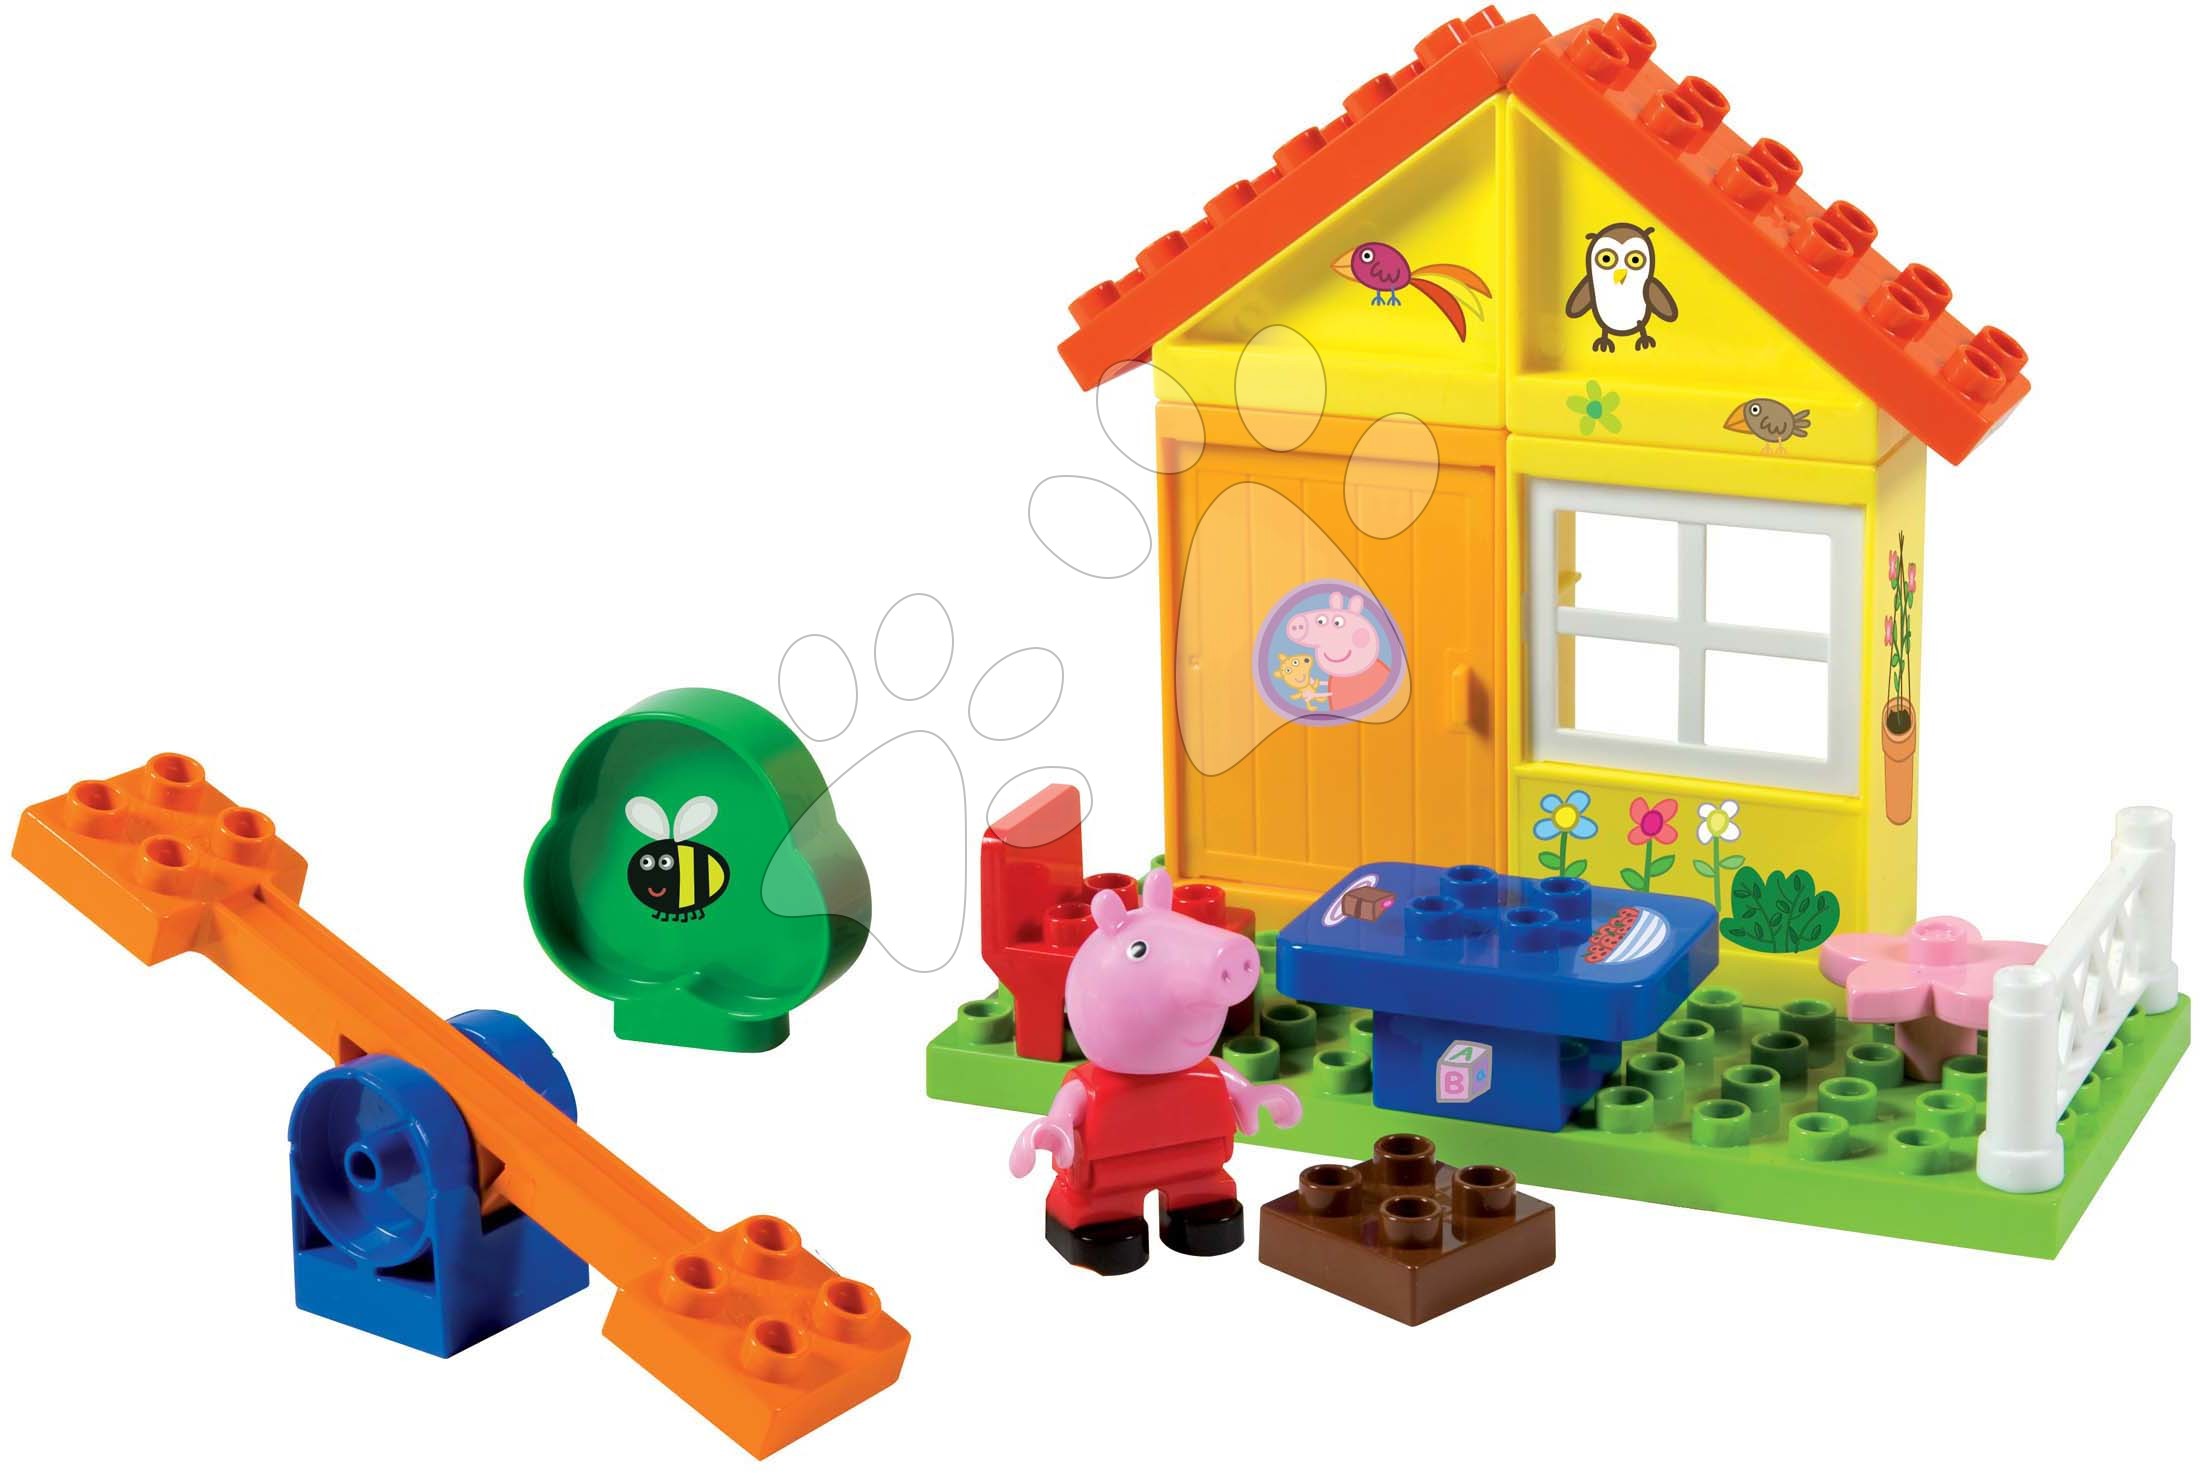 Stavebnica Peppa Pig Garden House PlayBig Bloxx BIG domček s posedením a hojdačkou 2 postavičky 26 dielov od 18 mes